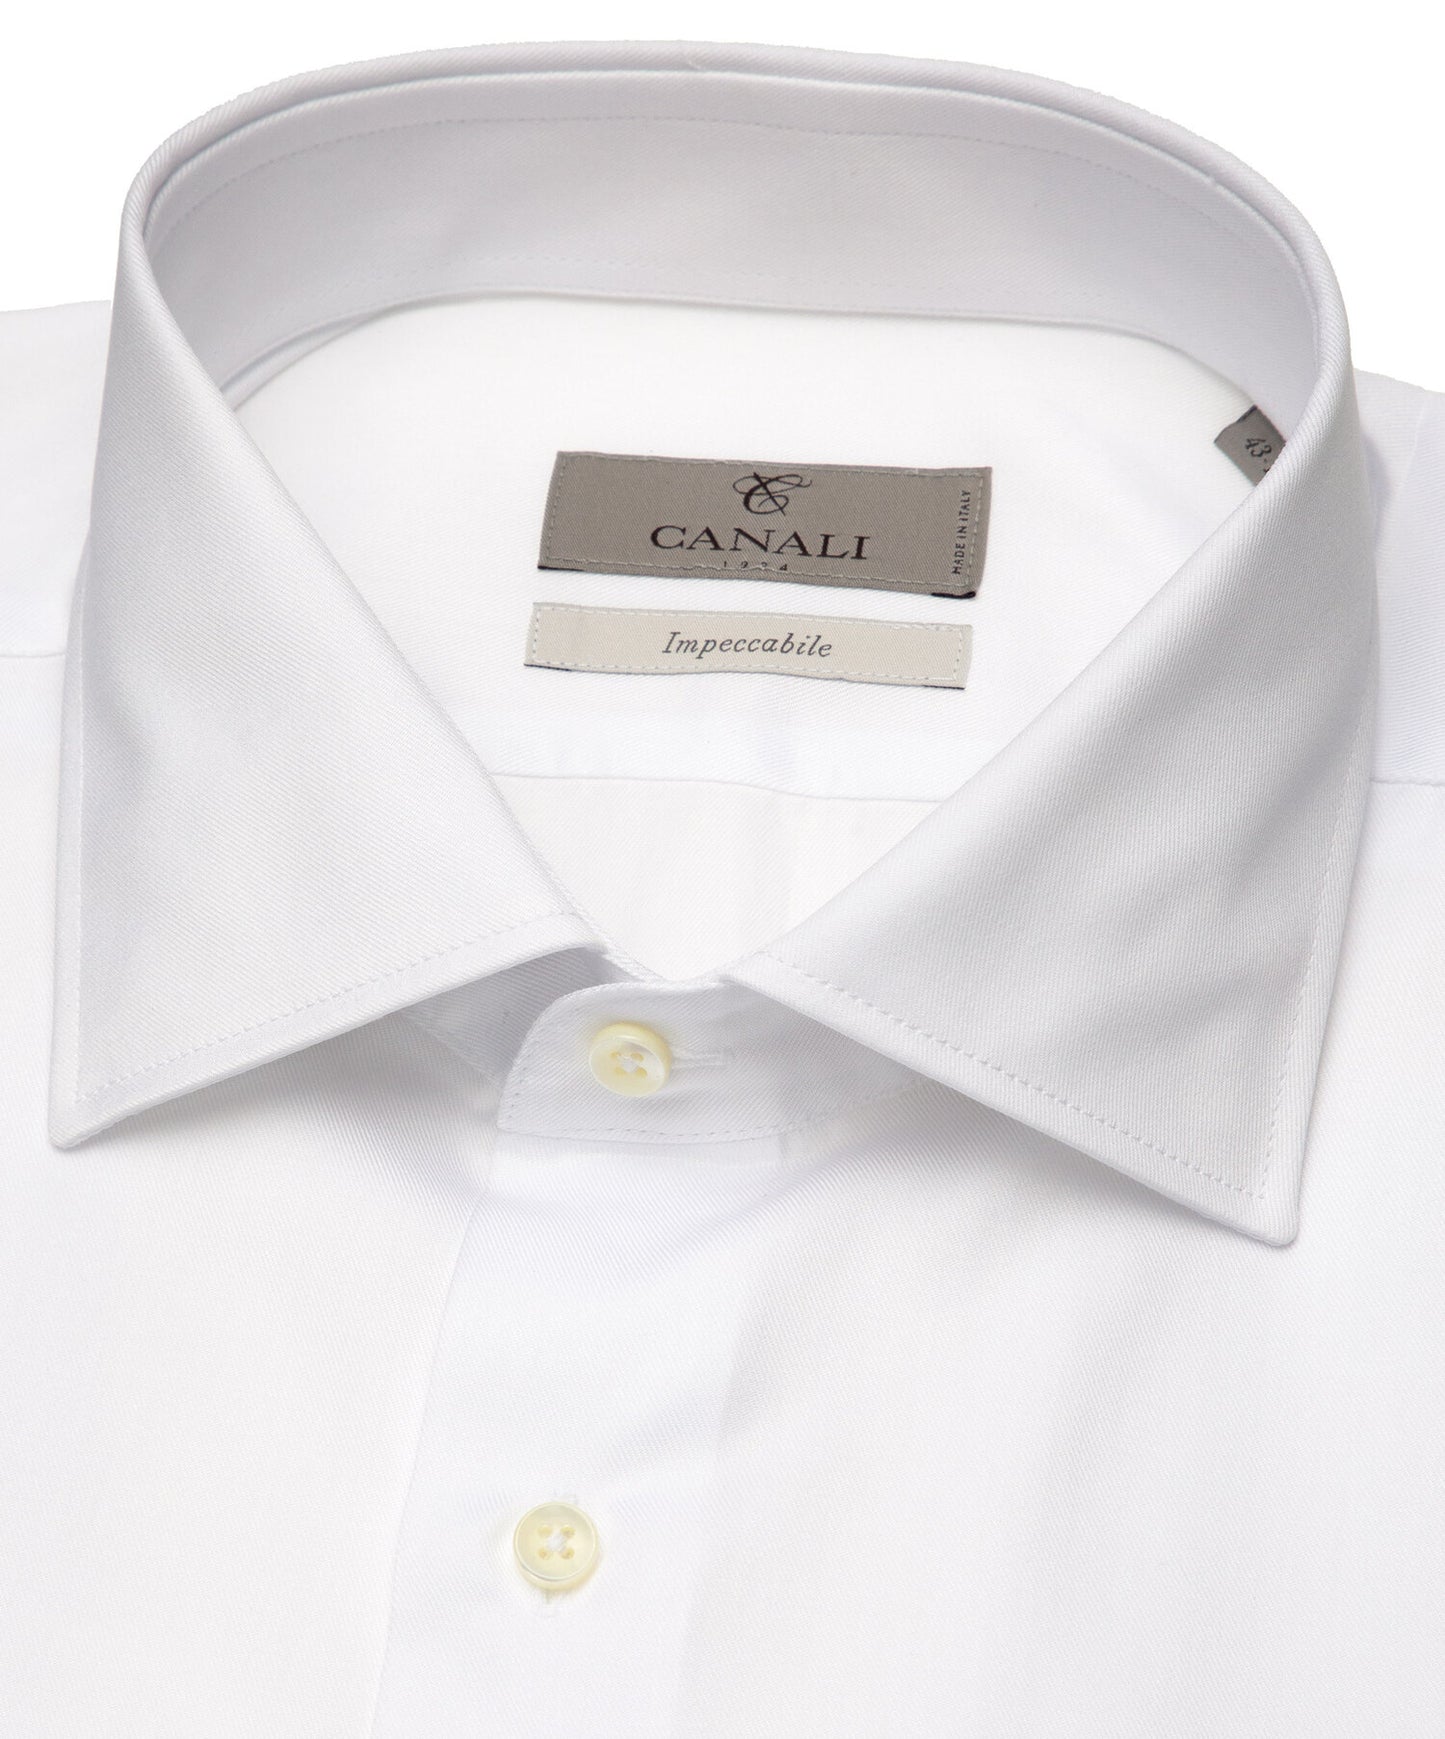 Canali Impeccabile Cotton Dress Shirt in White